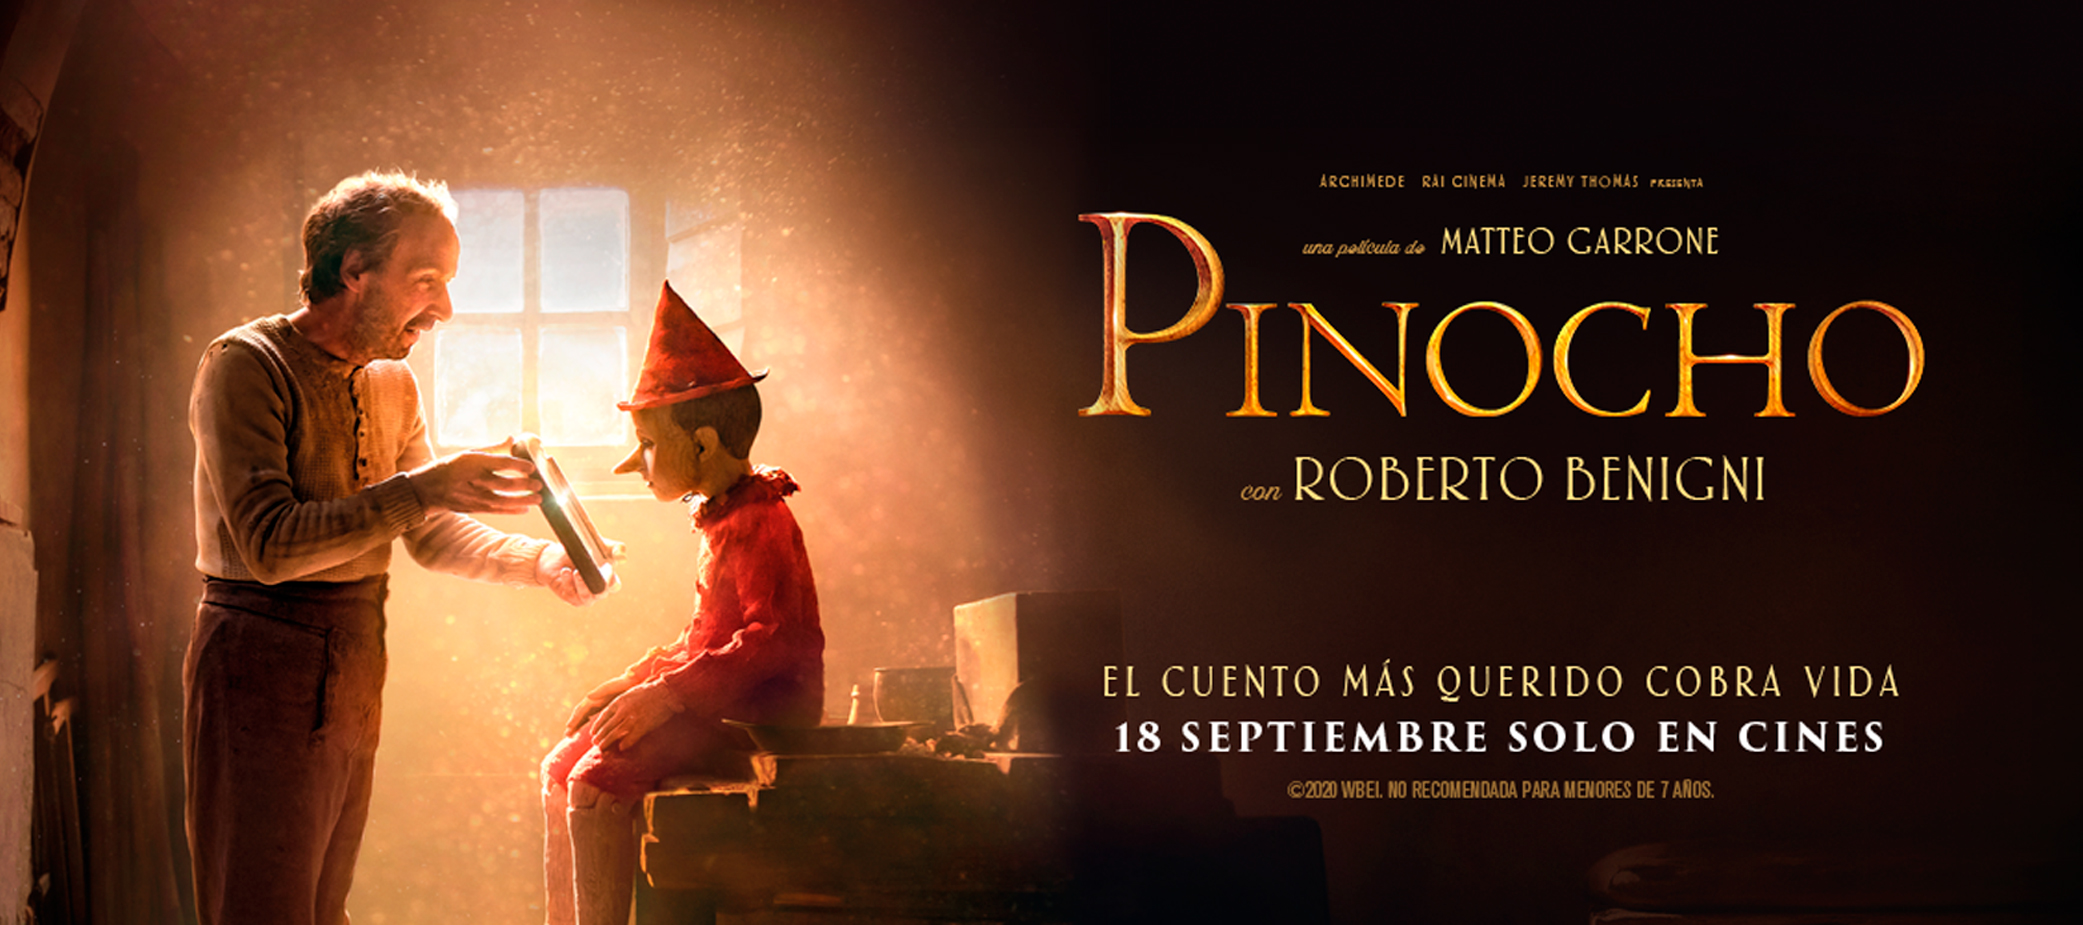 Pinocho en Cantones Cines de A Coruña